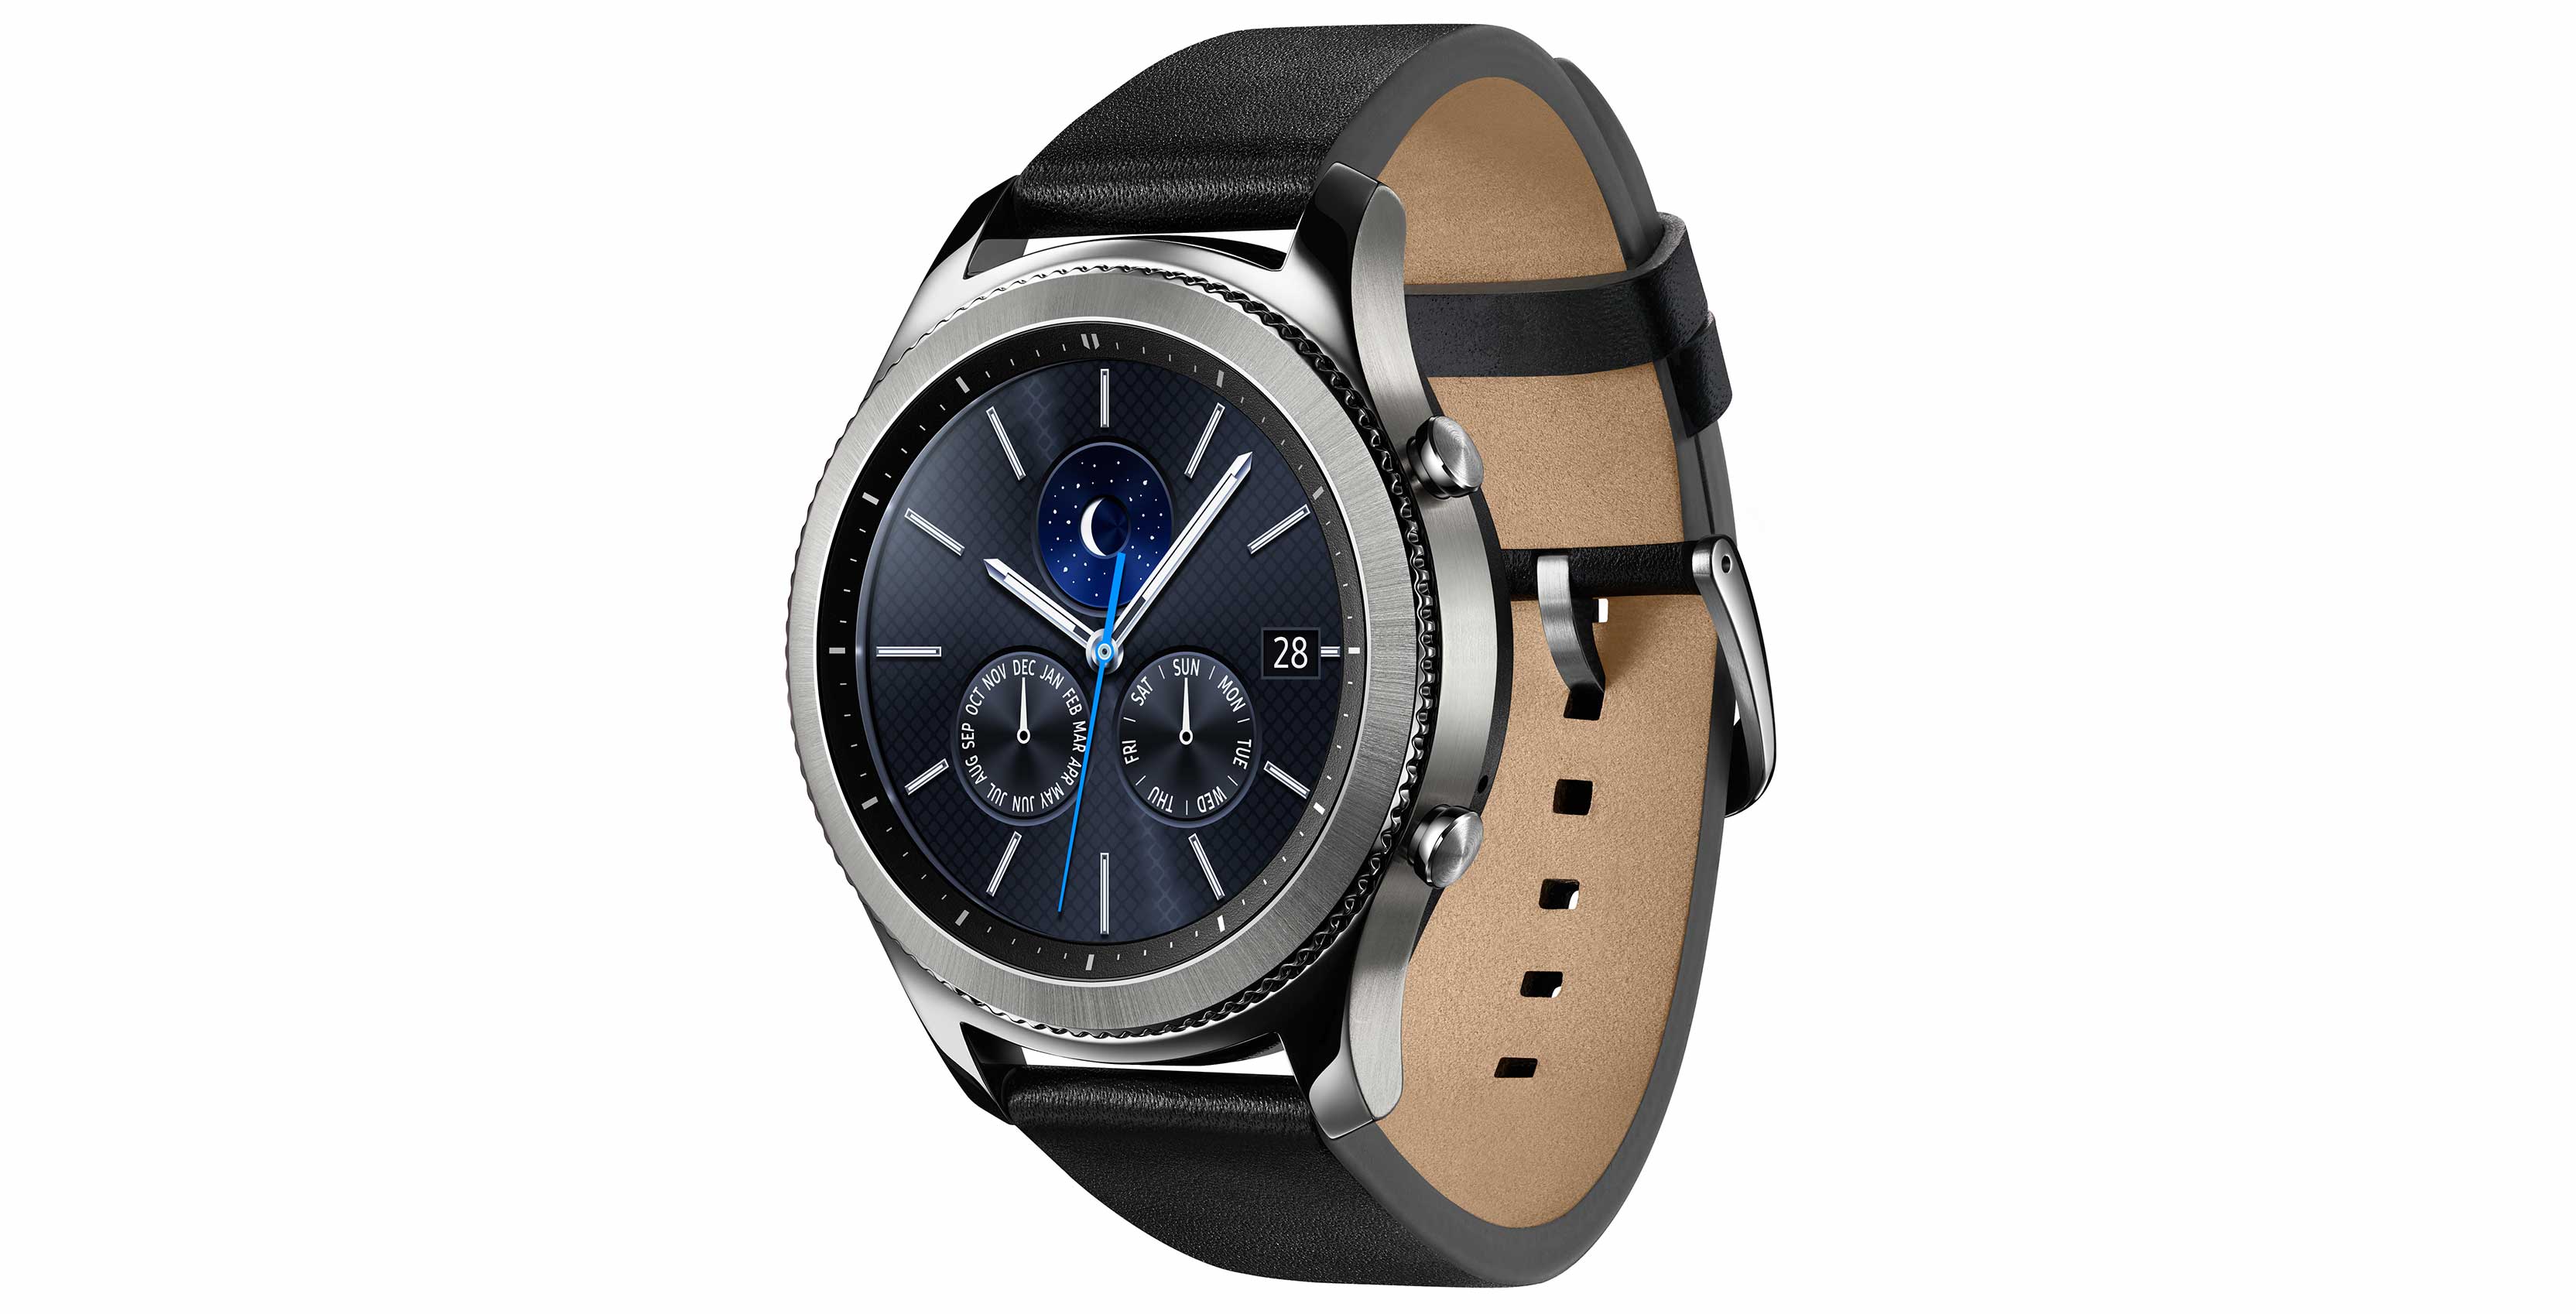 Samsung Gear S3 smartwatch running samsung tizen security vulnerabilities